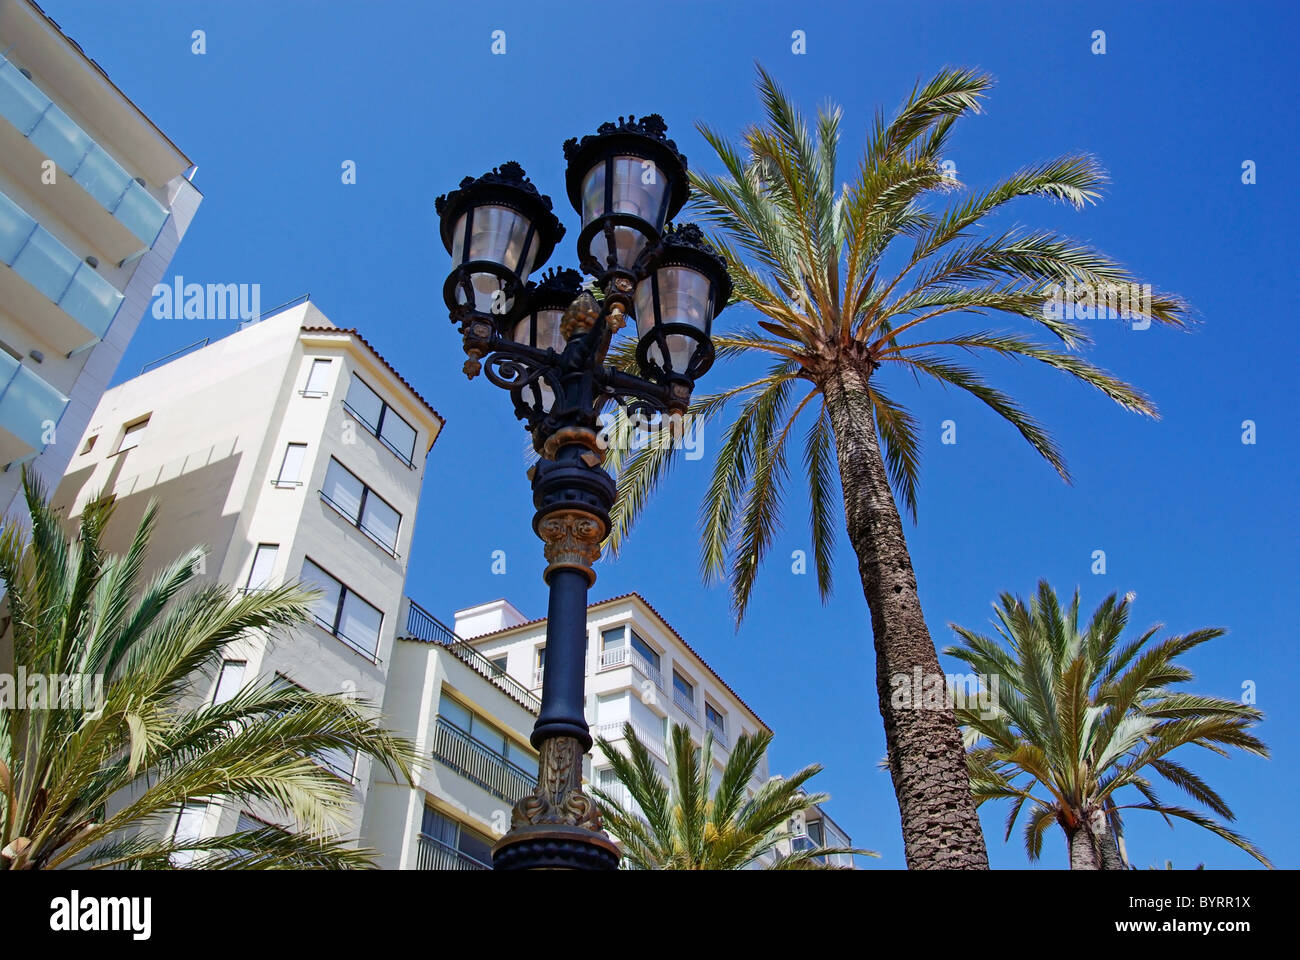 La lumière de la rue et de palmiers avec des appartements de luxe en arrière-plan. Lloret de Mar, Espagne. Banque D'Images